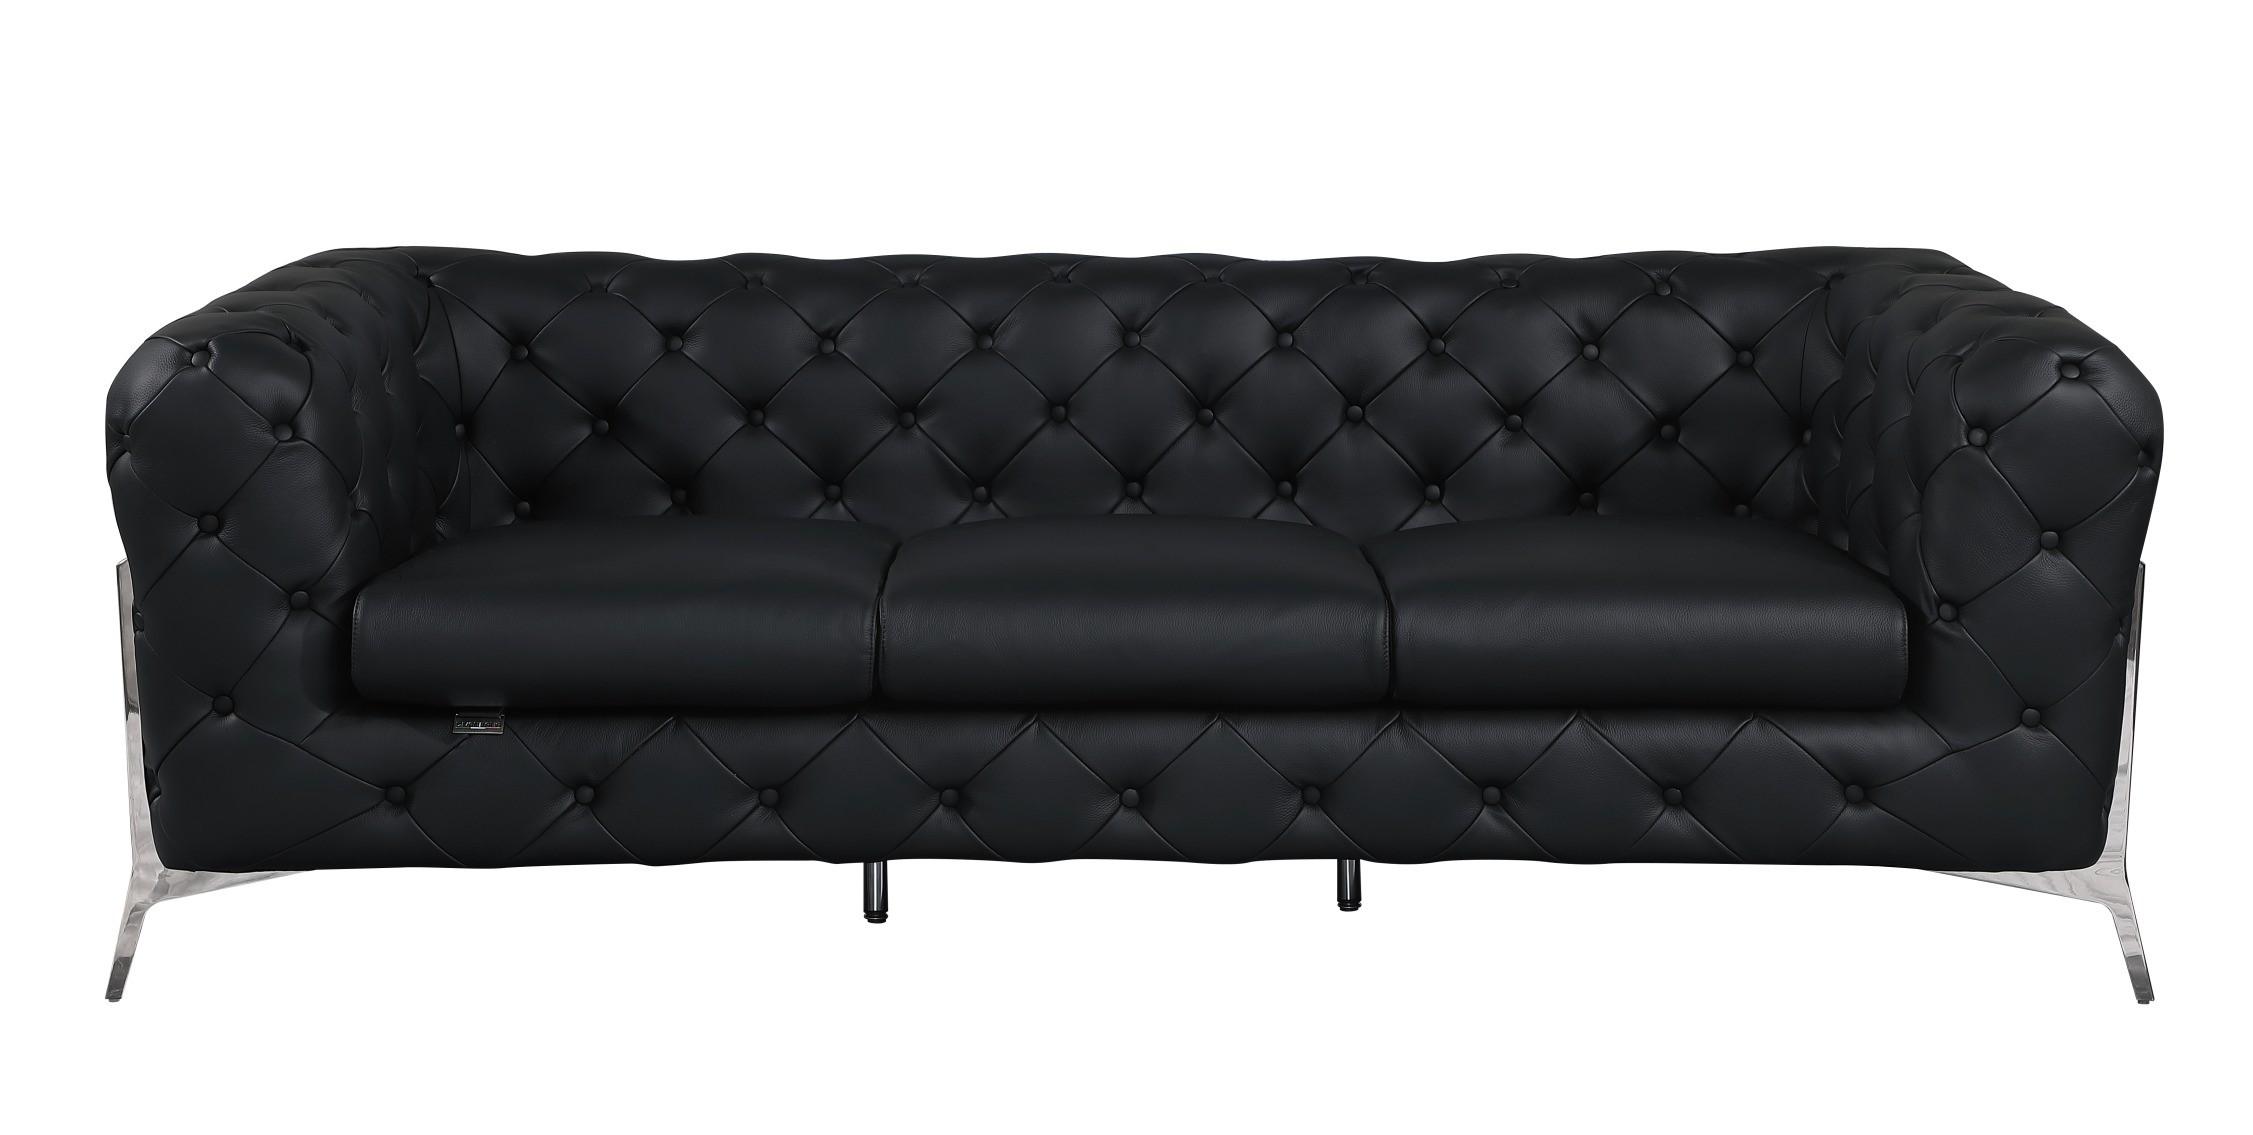 Contemporary Sofa 970 970-BLACK-S in Black Top grain leather